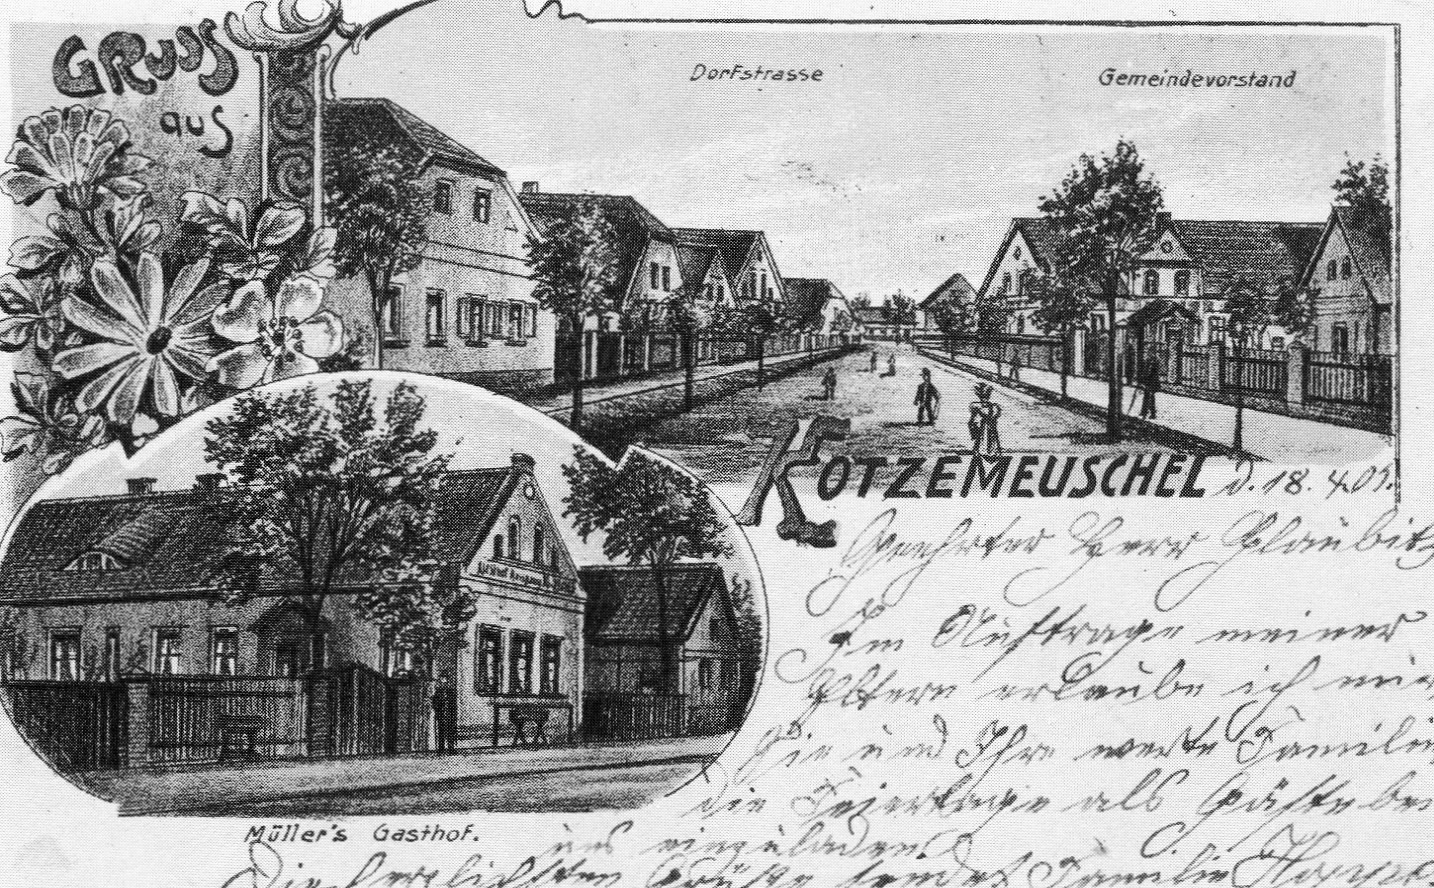 Dammfeld Kotzemeuschel 1905